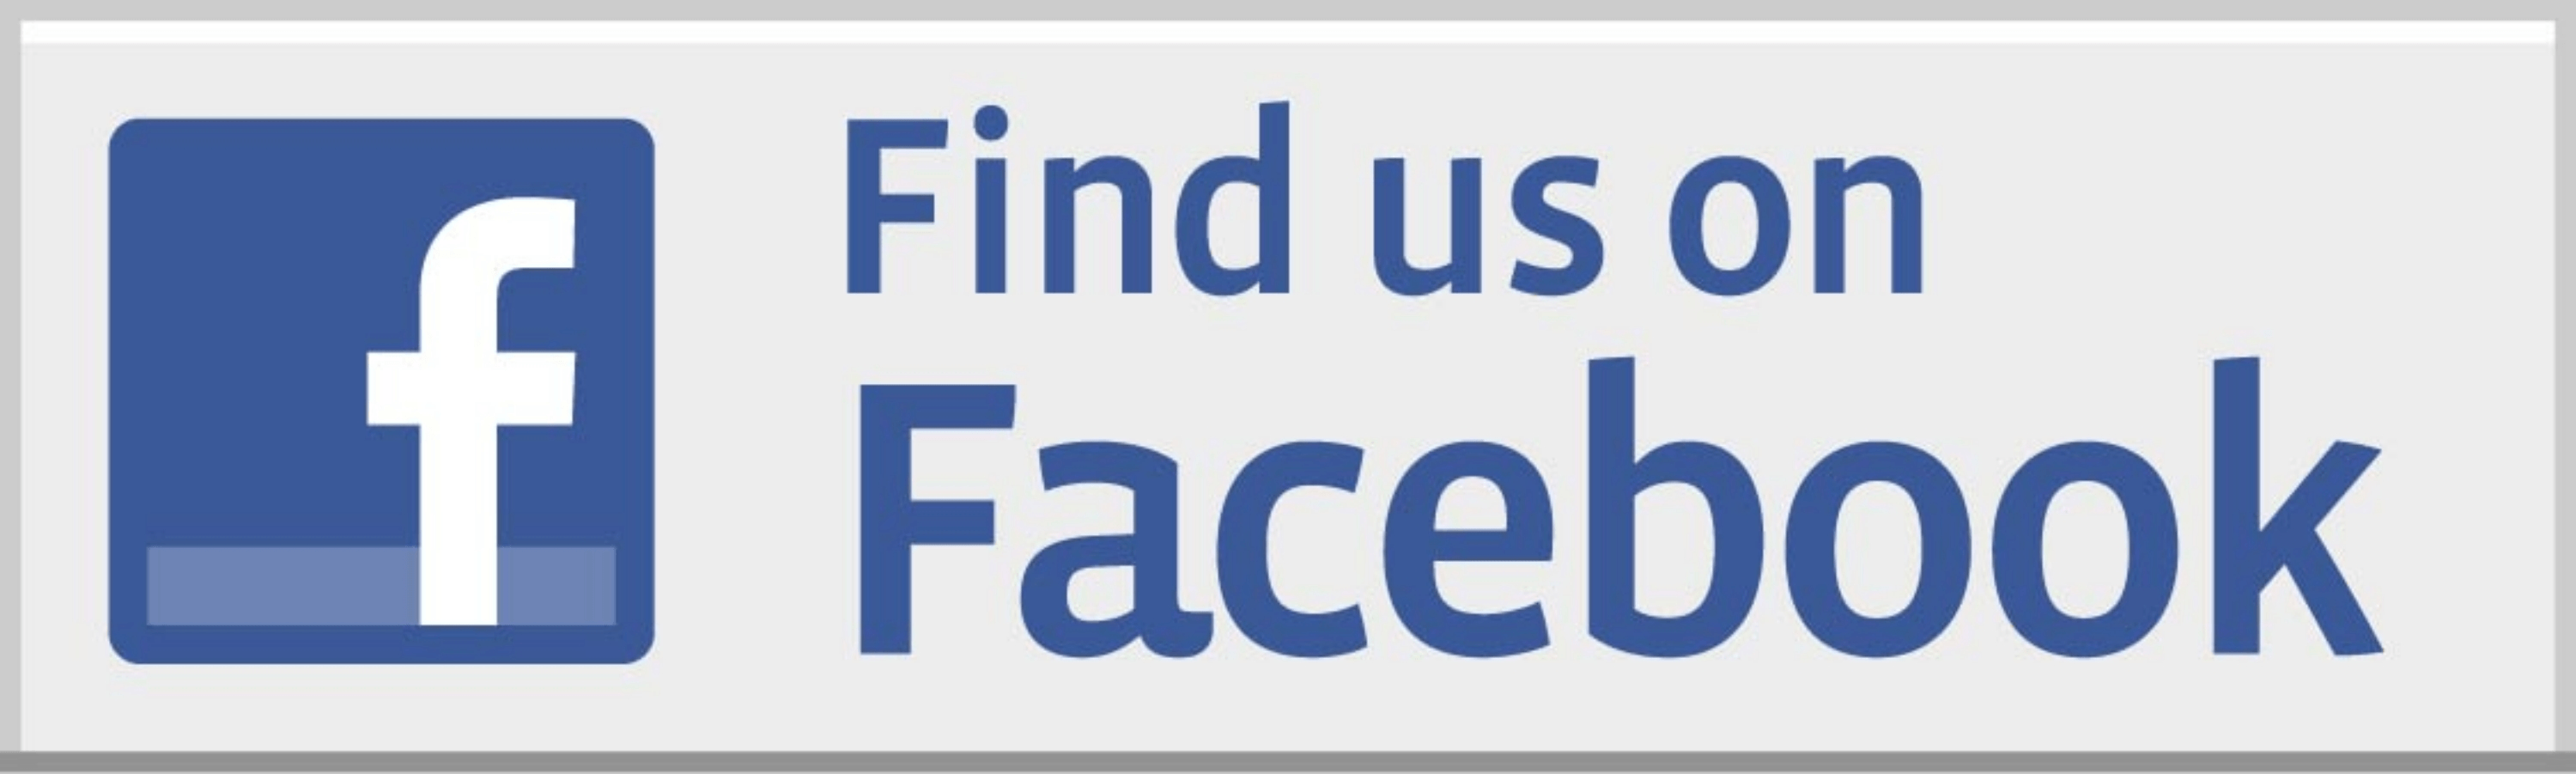 Find Me On Facebook Logo - Facebook Logo